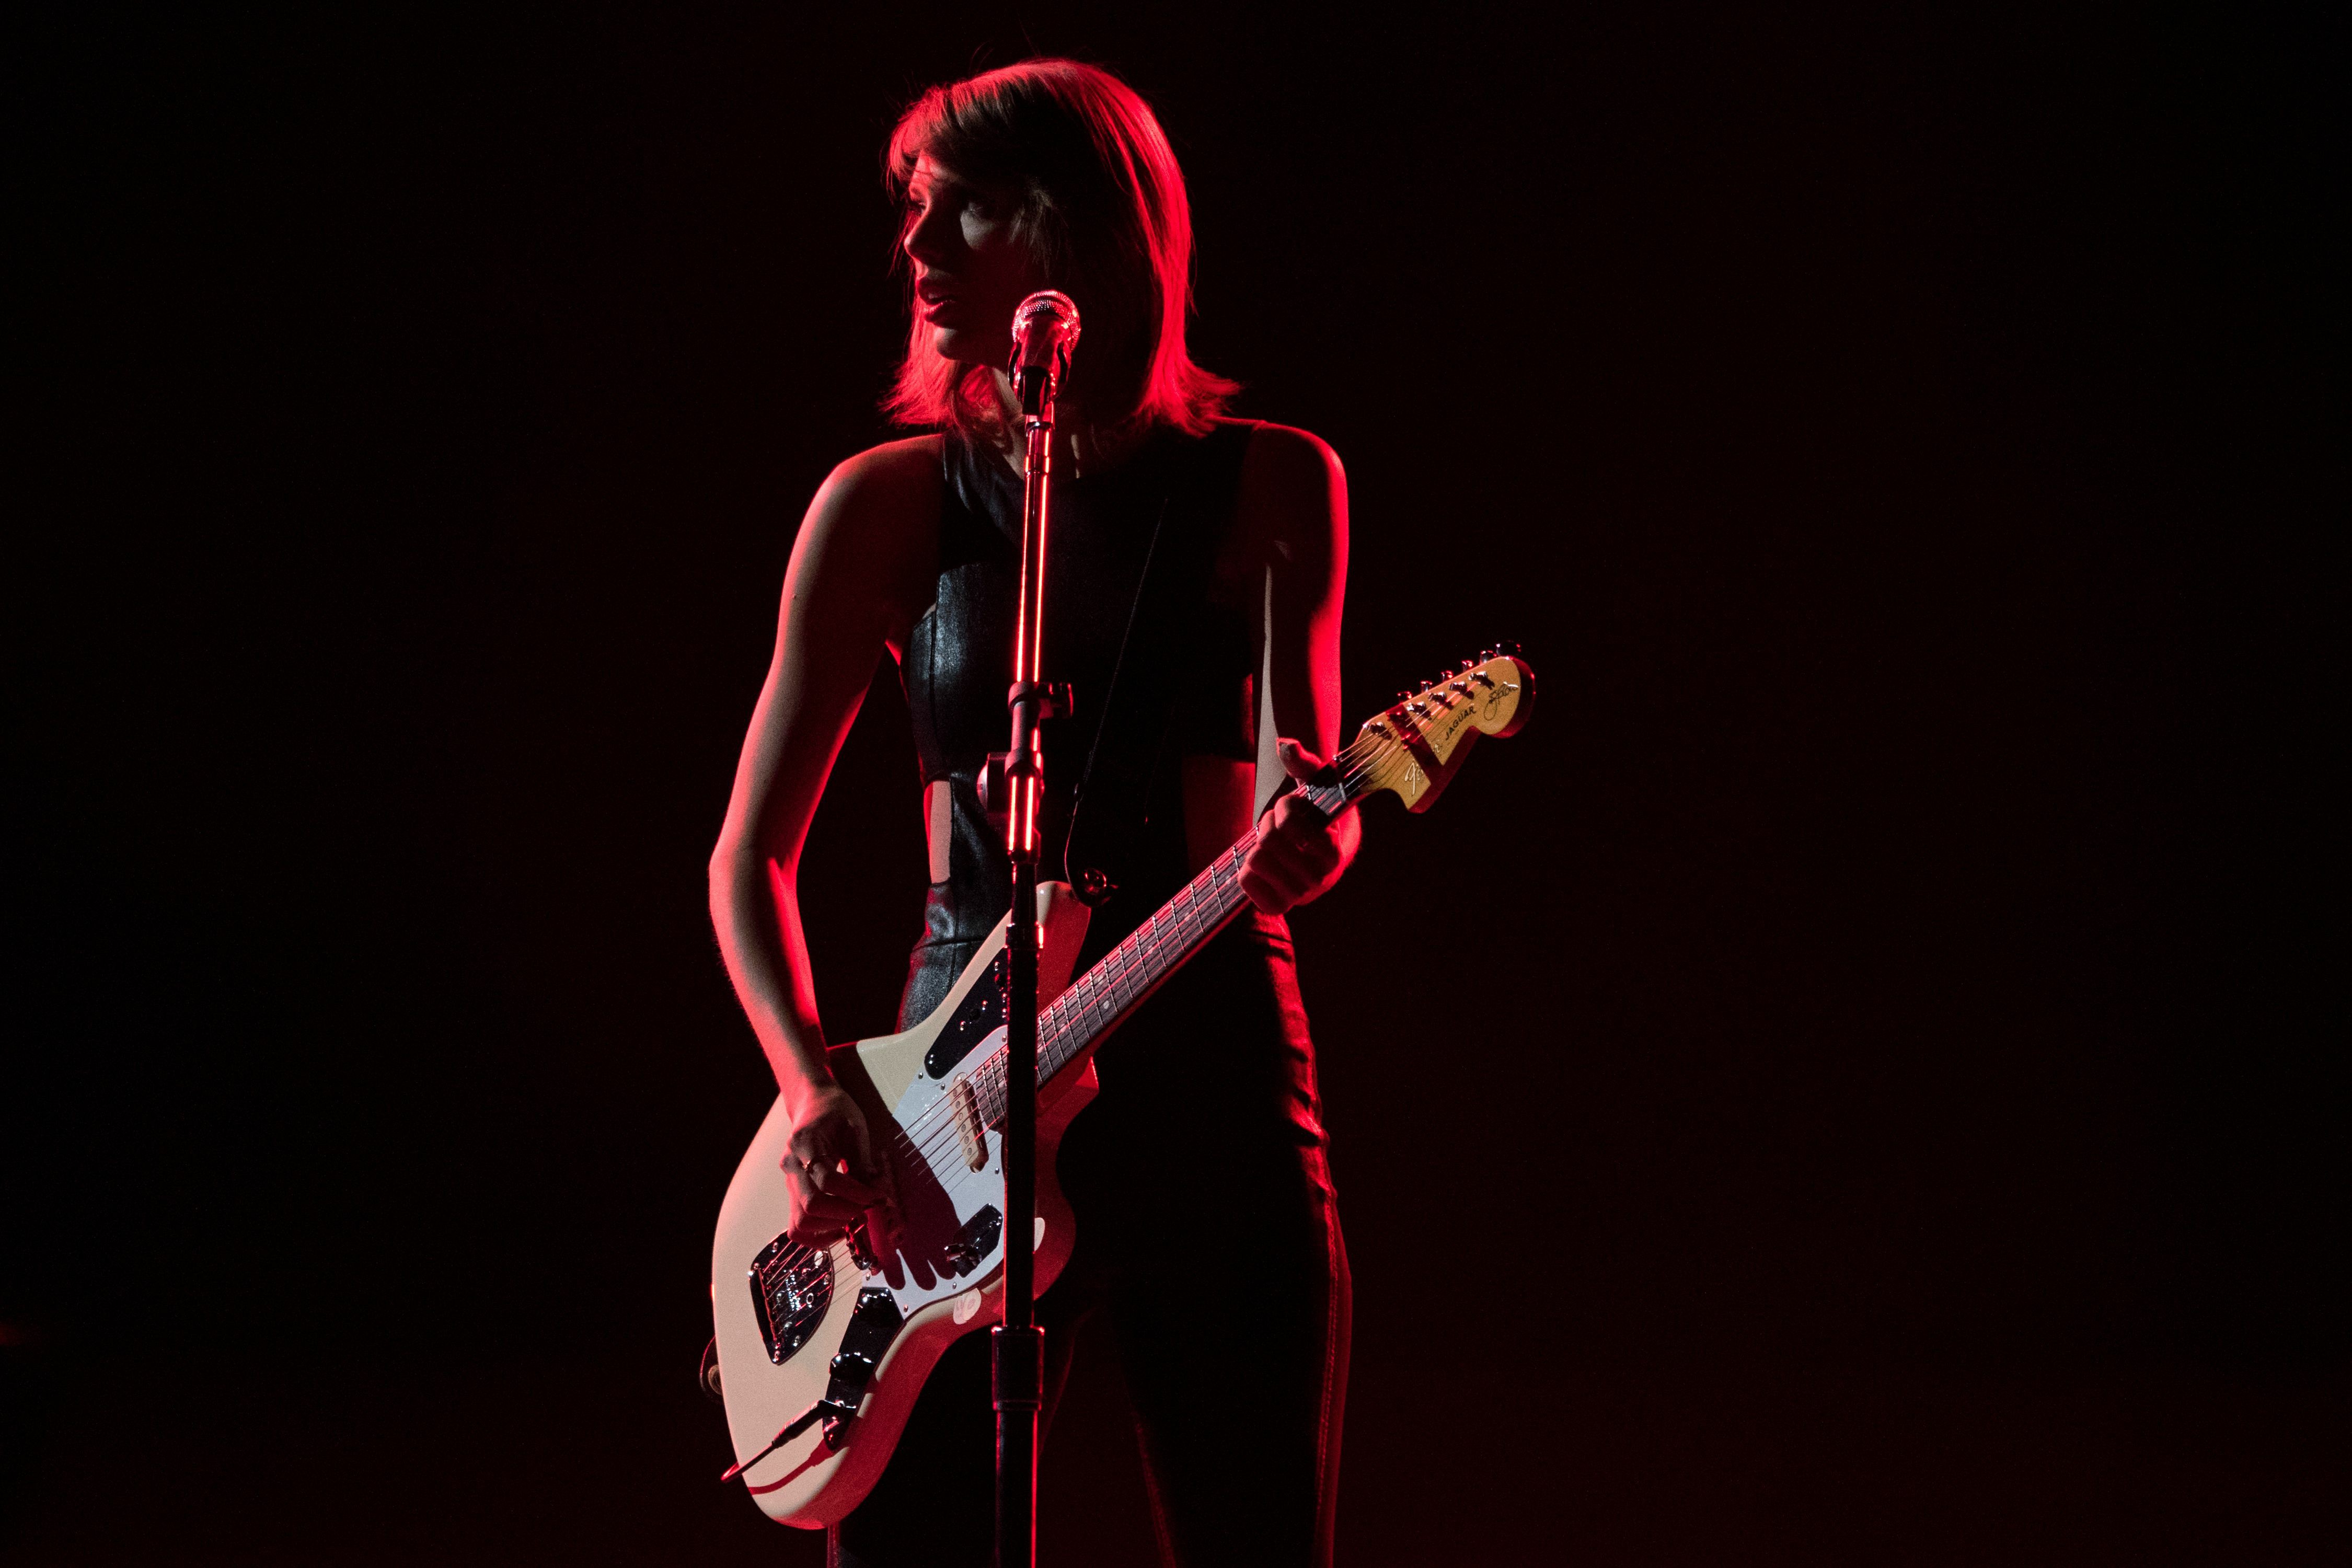 Тейлор музыка. Тейлор Свифт с гитарой на сцене. Тейлор Свифт 1989 концерт. Taylor Swift с гитарой. Тейлор Свифт на сцене.